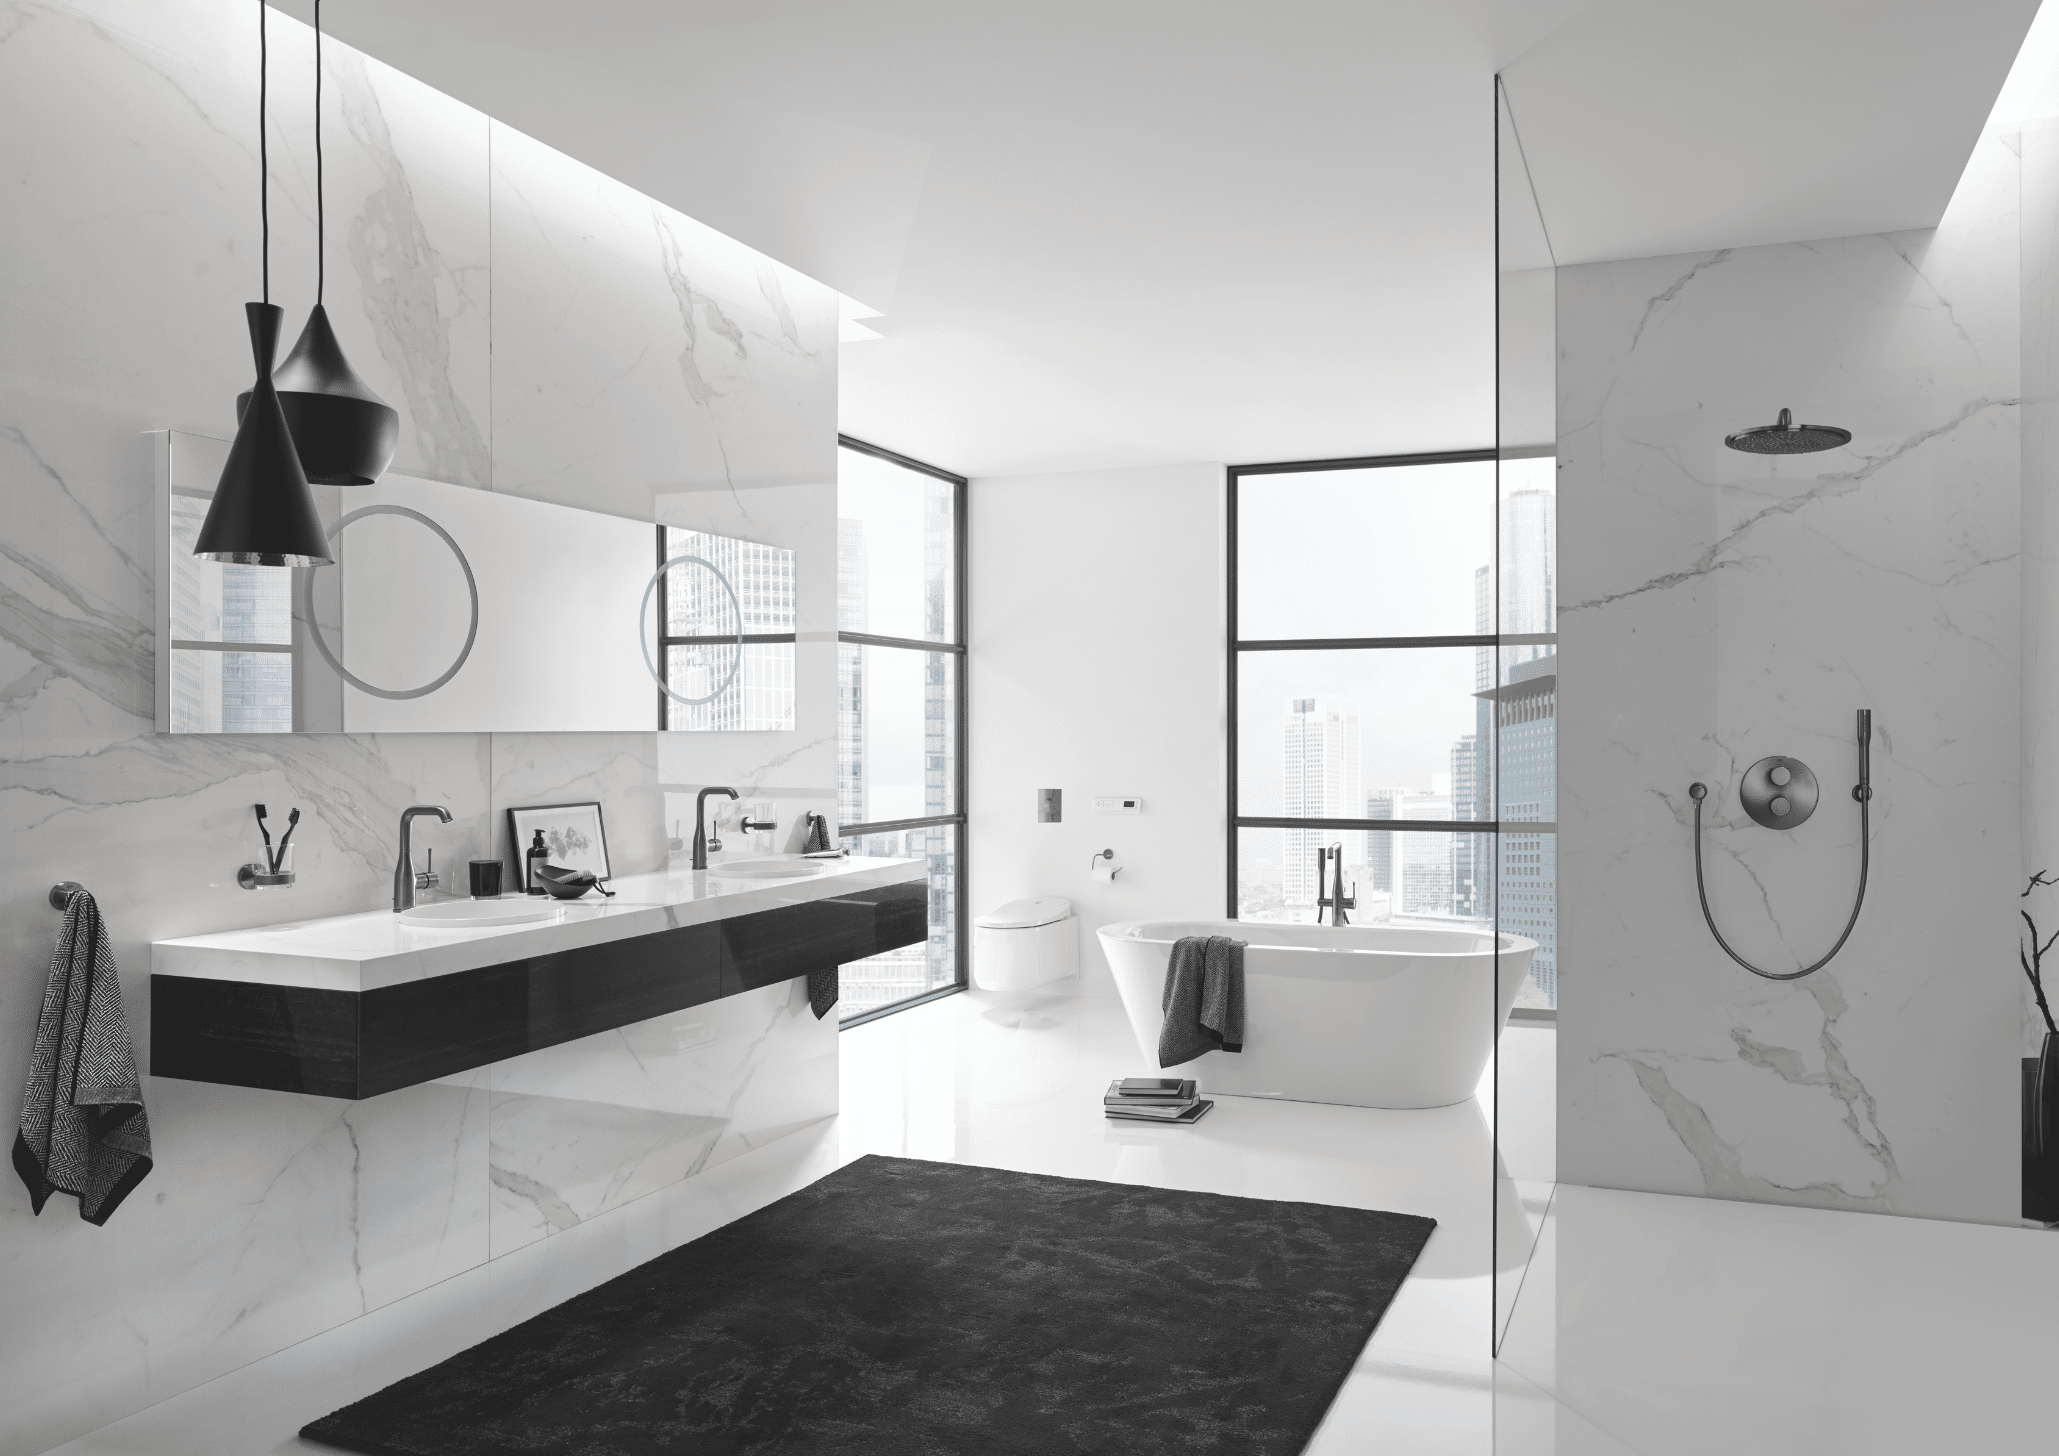 Grohe zeigt ein weißes Badezimmer mit Marmorwänden, Doppelwaschbecken und einer Walk-In Dusche, eine freistehende Badewanne und Verglasungen in den Wänden.